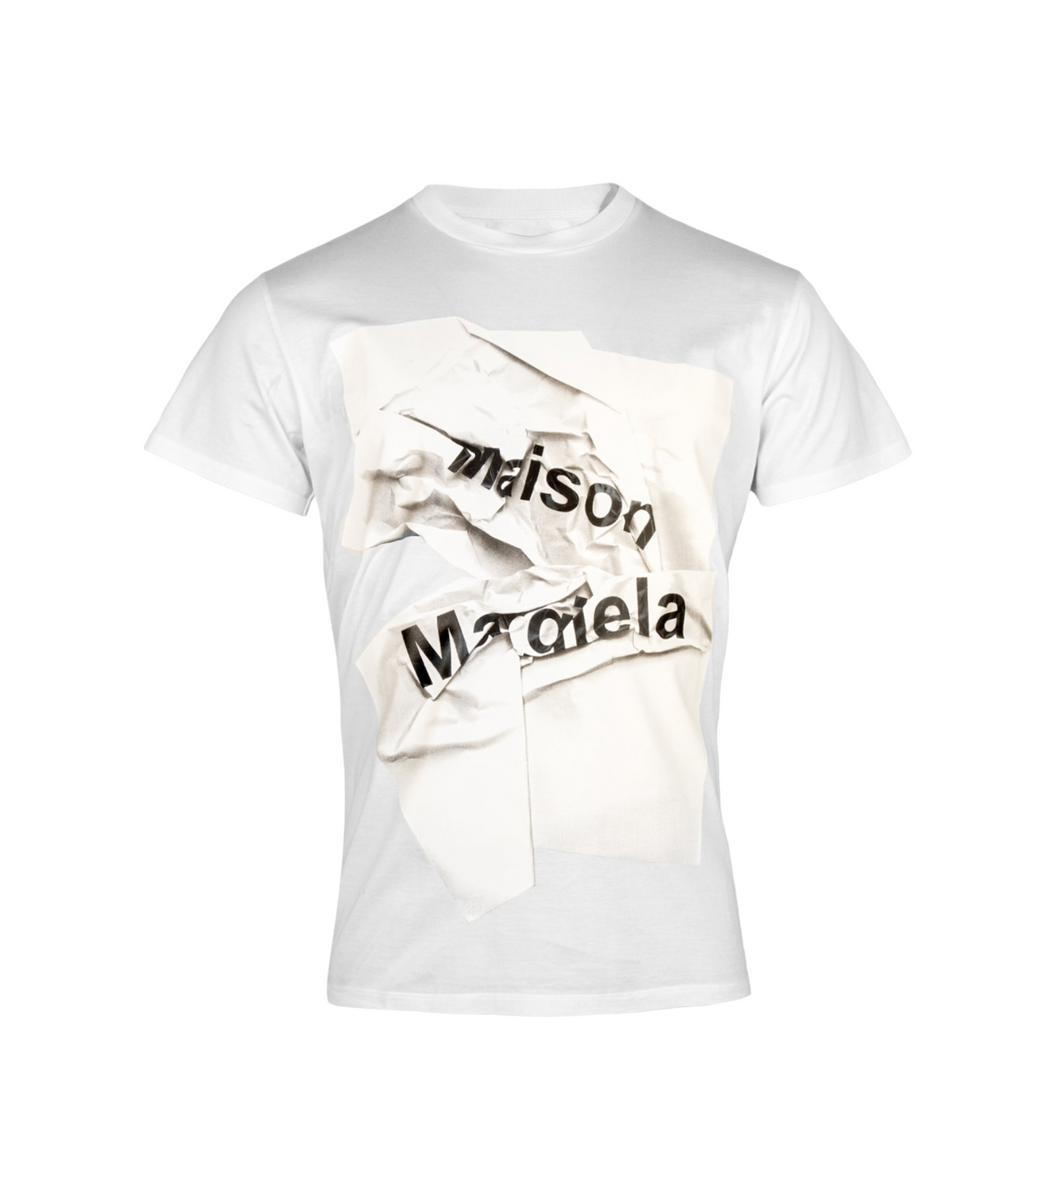 MAISON MARGIELA モザイクロゴTシャツ メゾンマルジェラ 特価販売